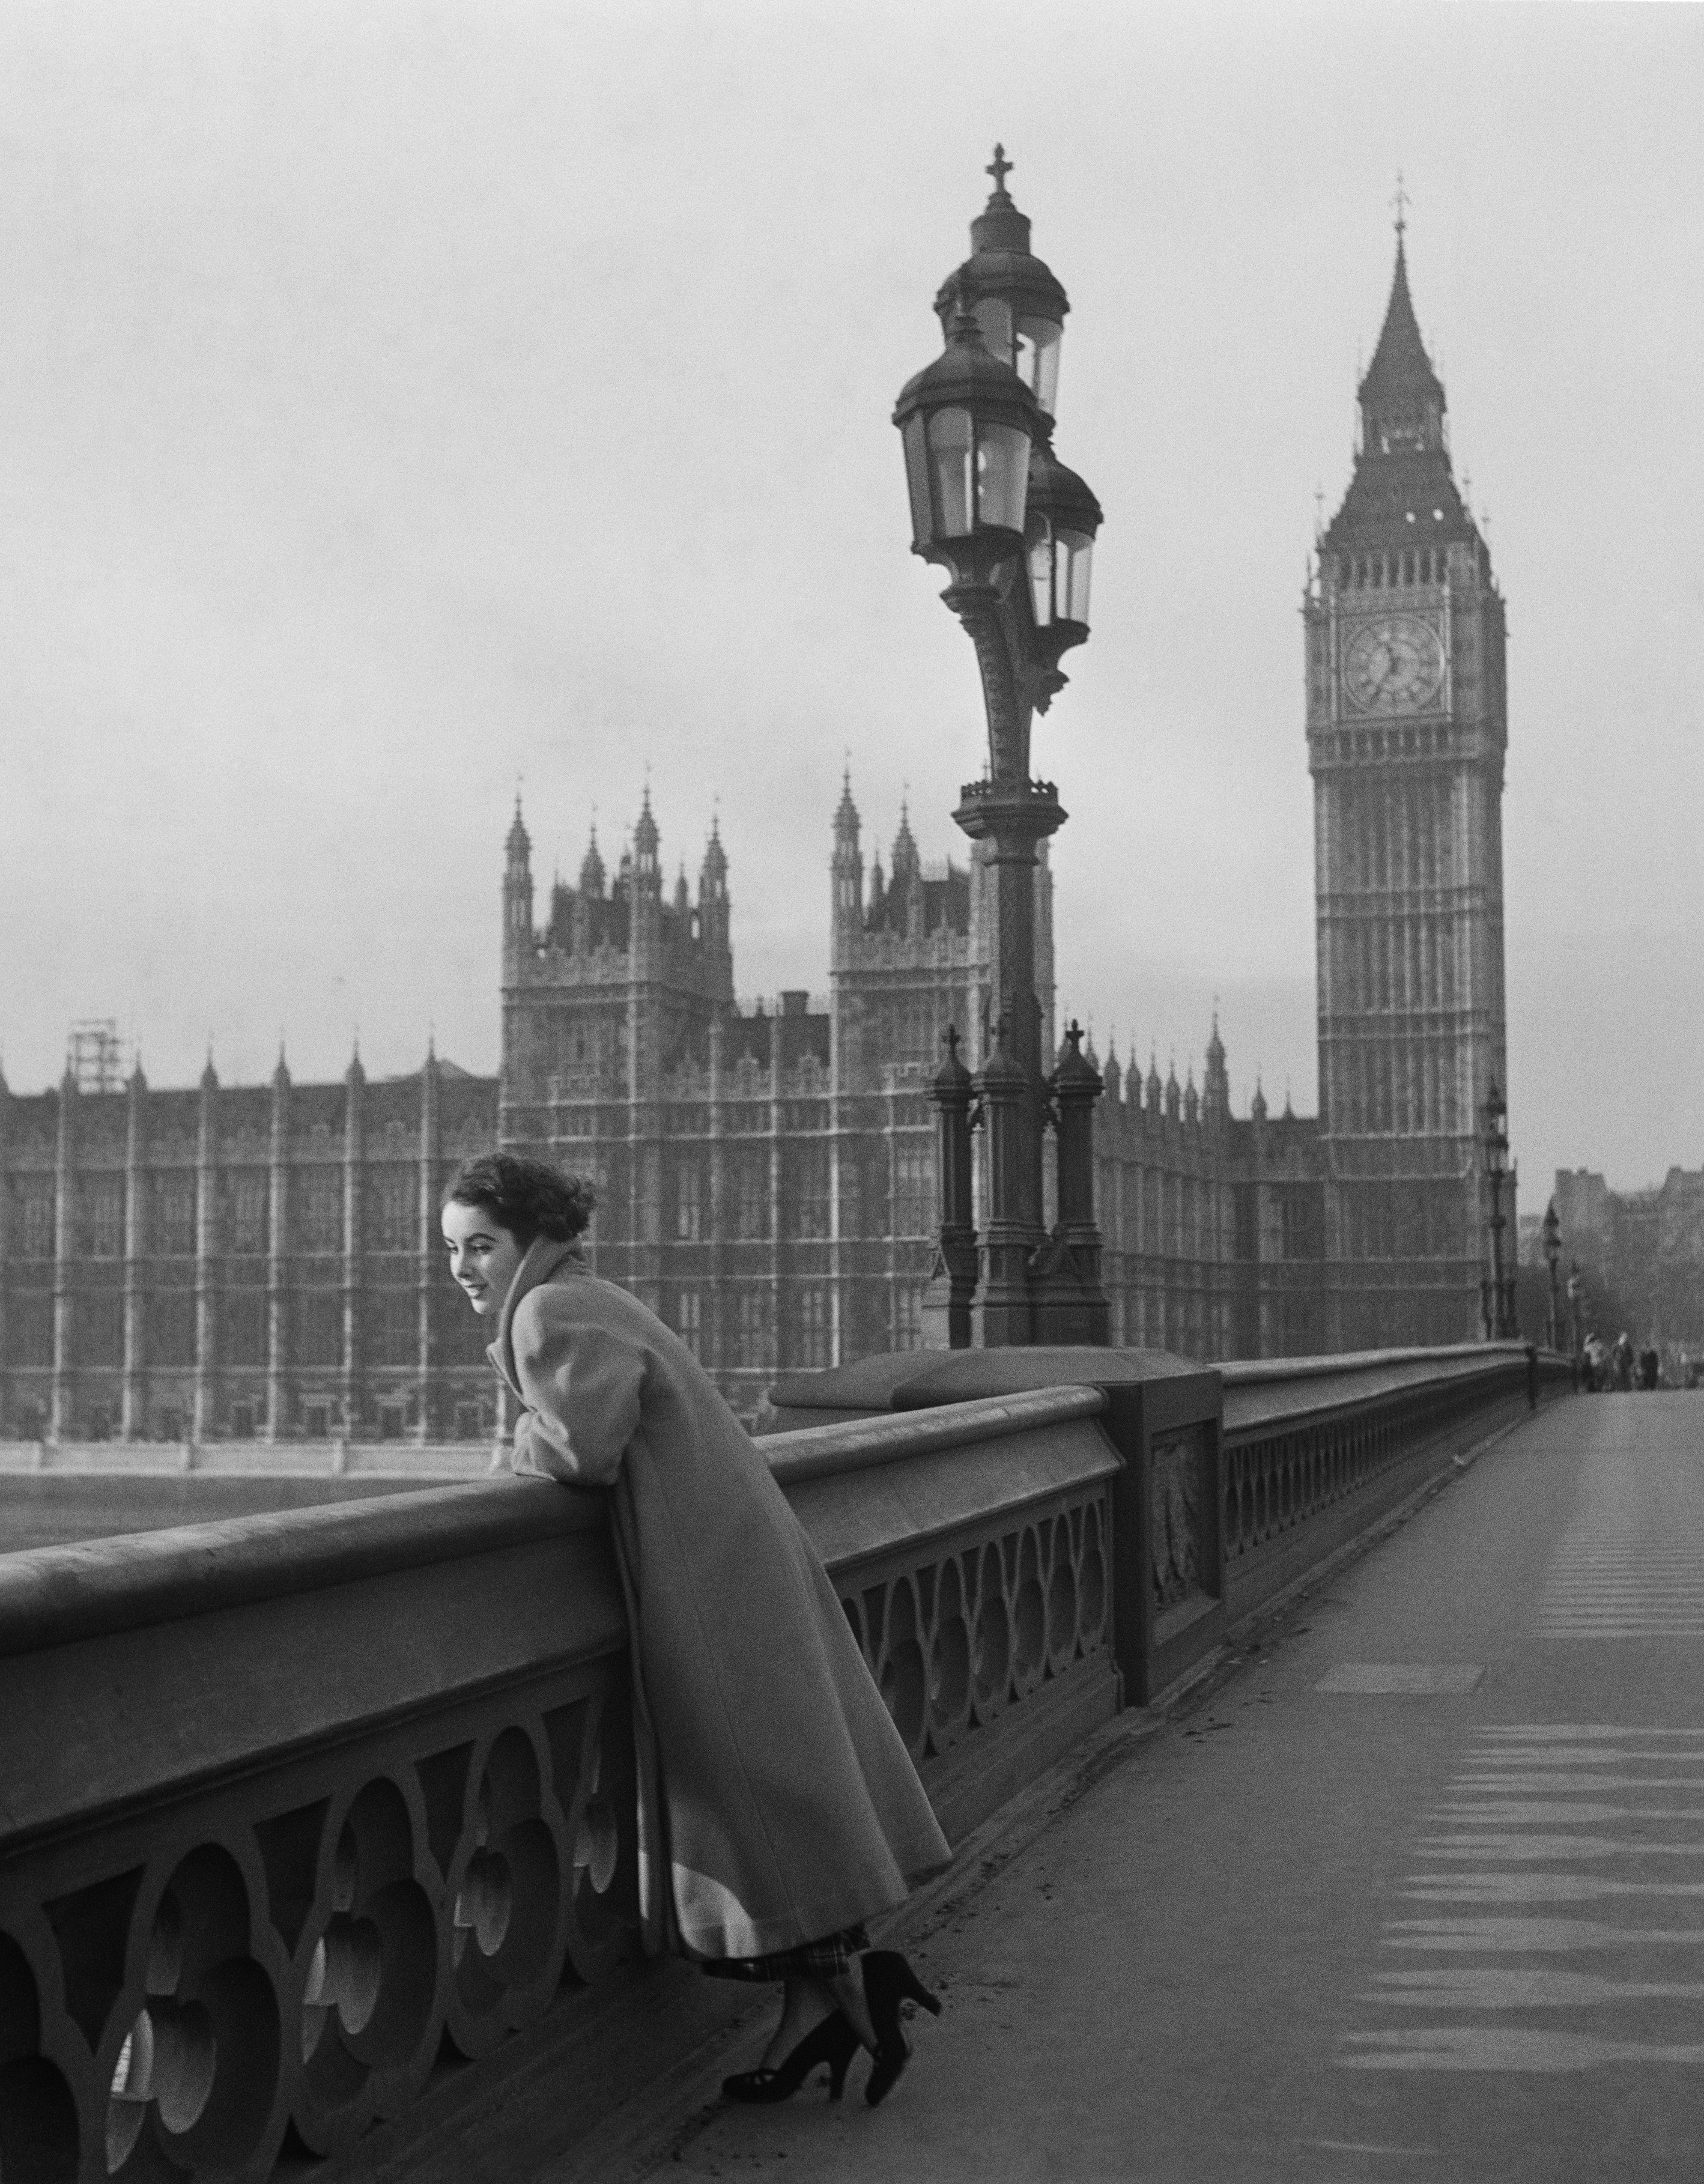 Liz a Londra nel 1948 affacciata sul Tamigi